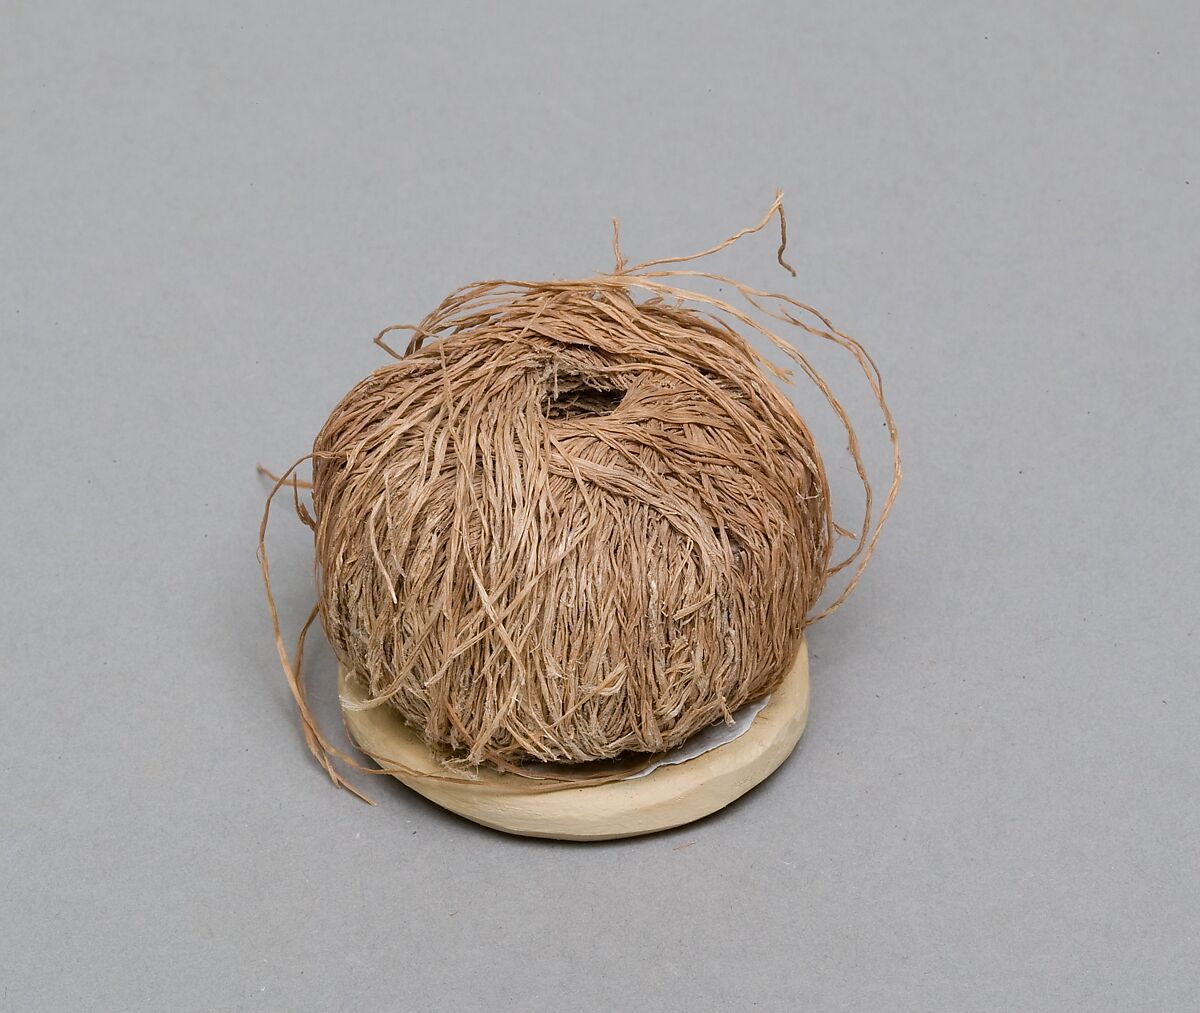 Ball of weaving thread, Linen fiber 